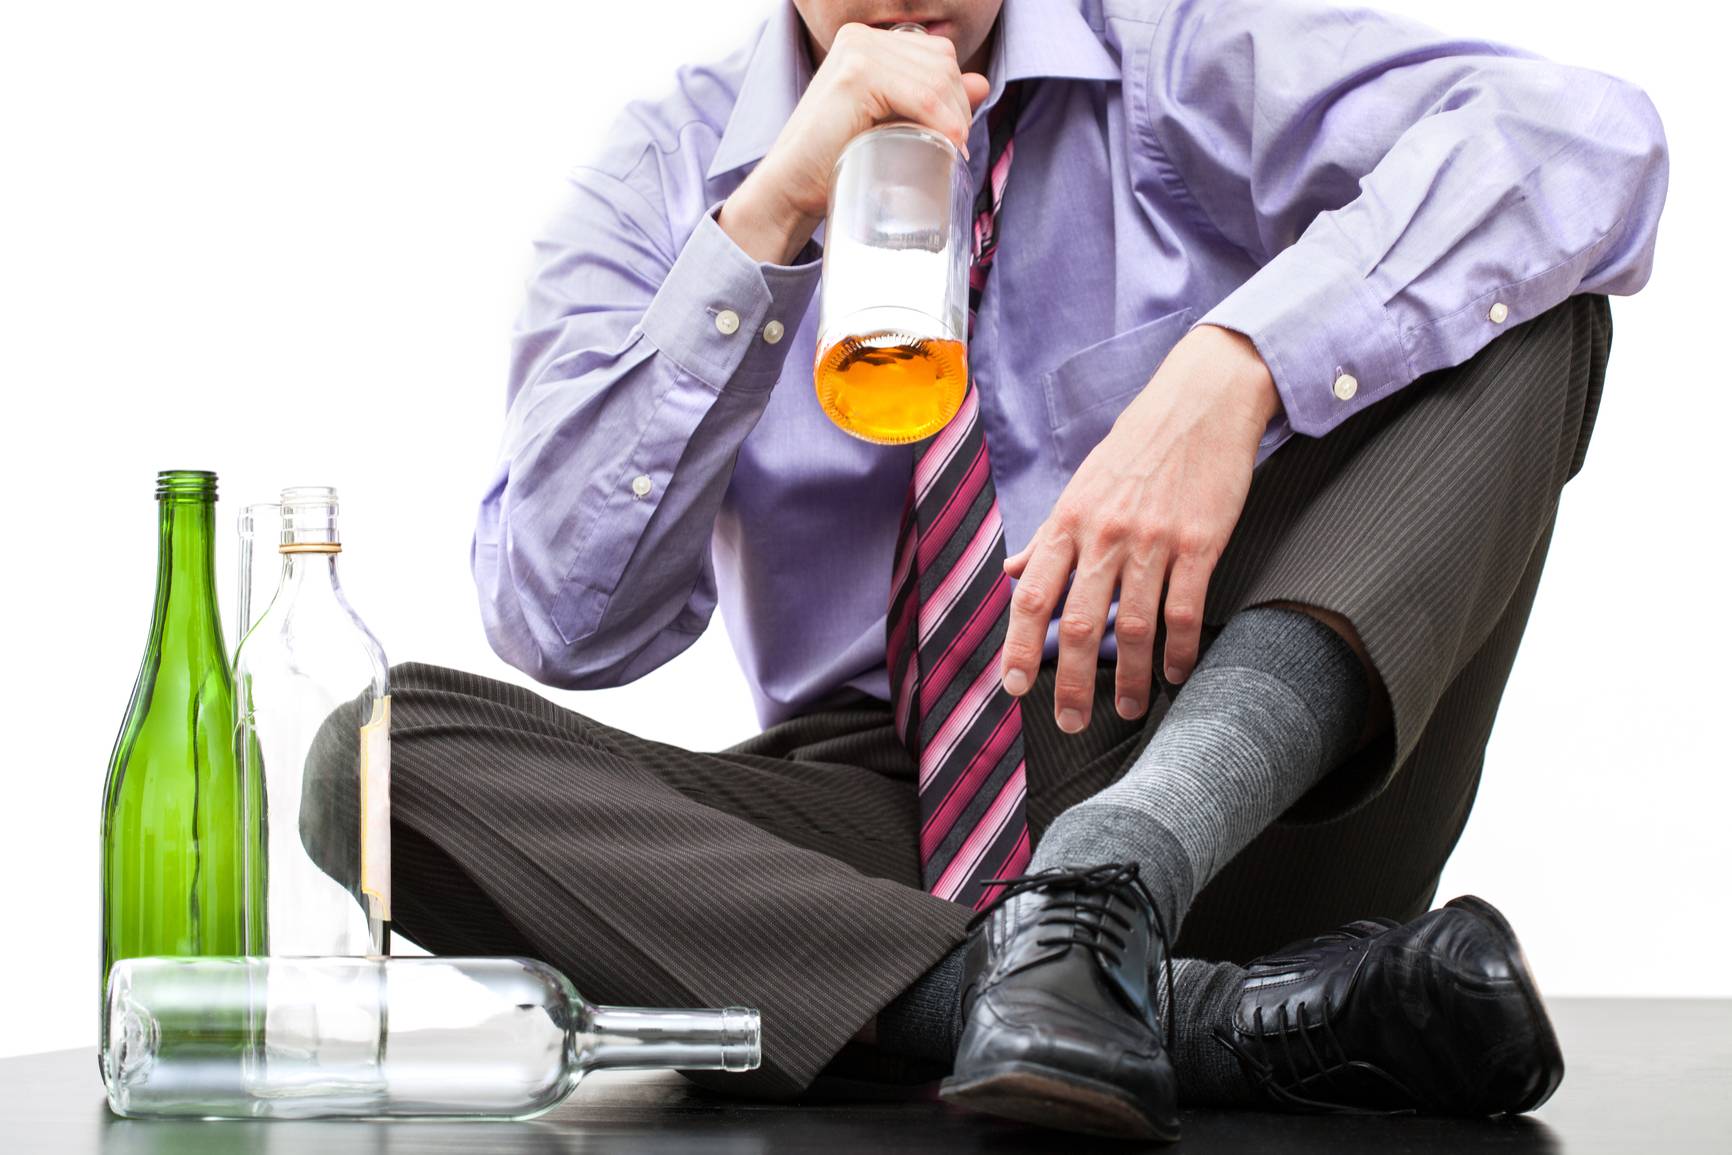 Картинка пьющий человек. Человек пьет алкоголь. Пьющий алкоголь человек. О пьянстве. Мужчина пьет алкоголь.